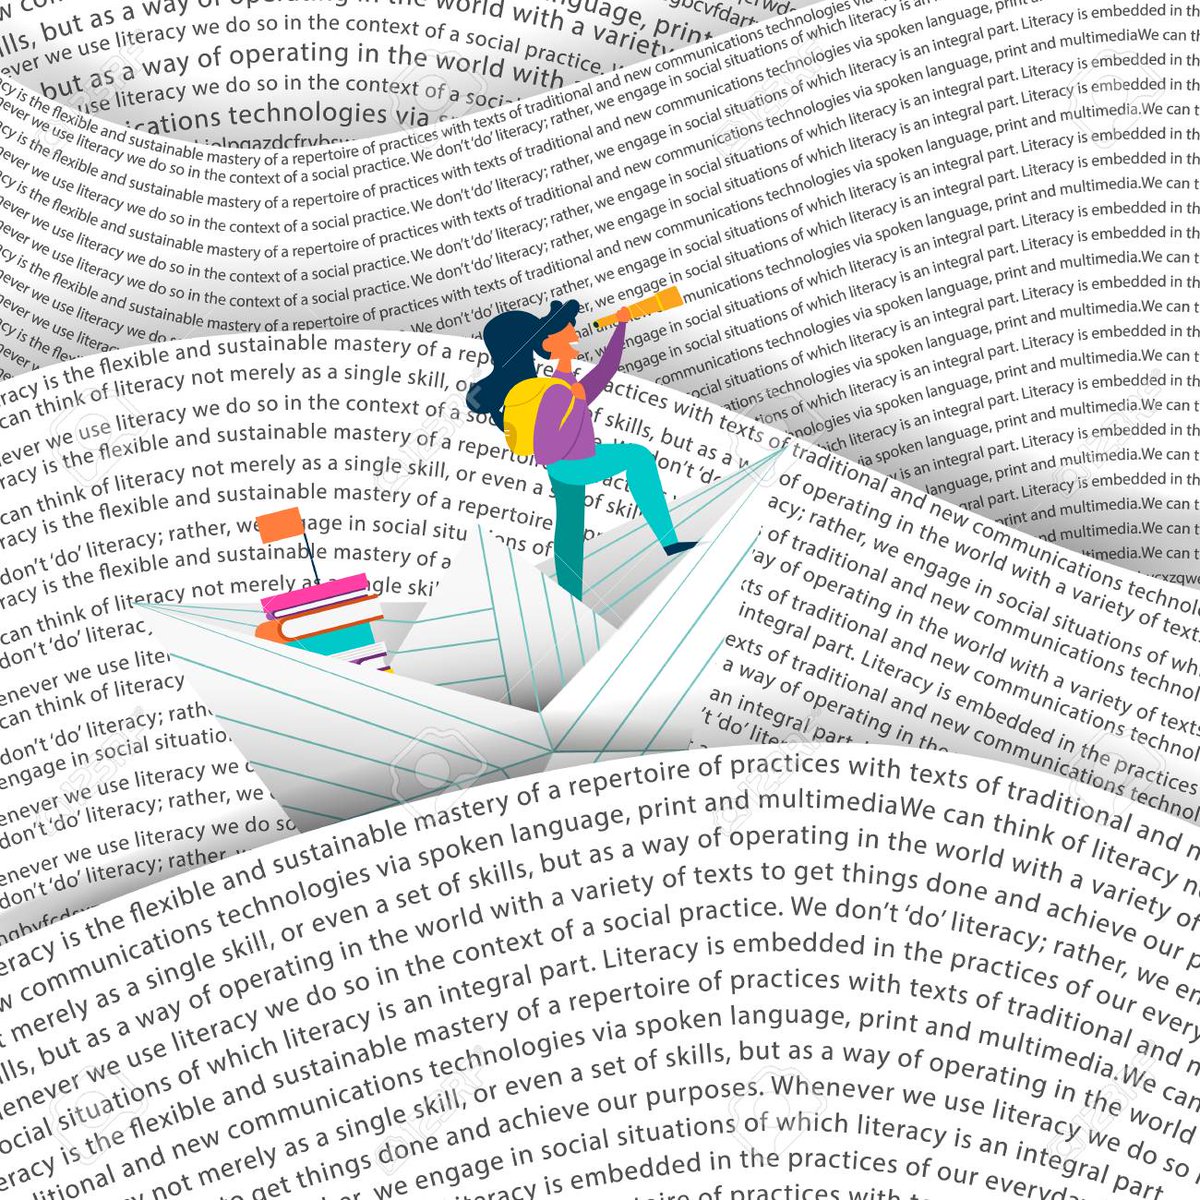 In Moby Dick Melville parla di un vice-vicebibliotecario che amava le grammatiche perché gli ricordavano la sua natura mortale. Un po' di tempo nella nostra vita è passato, mentre articolavamo i tempi dei verbi.

Claudio Magris, L'infinito viaggiare